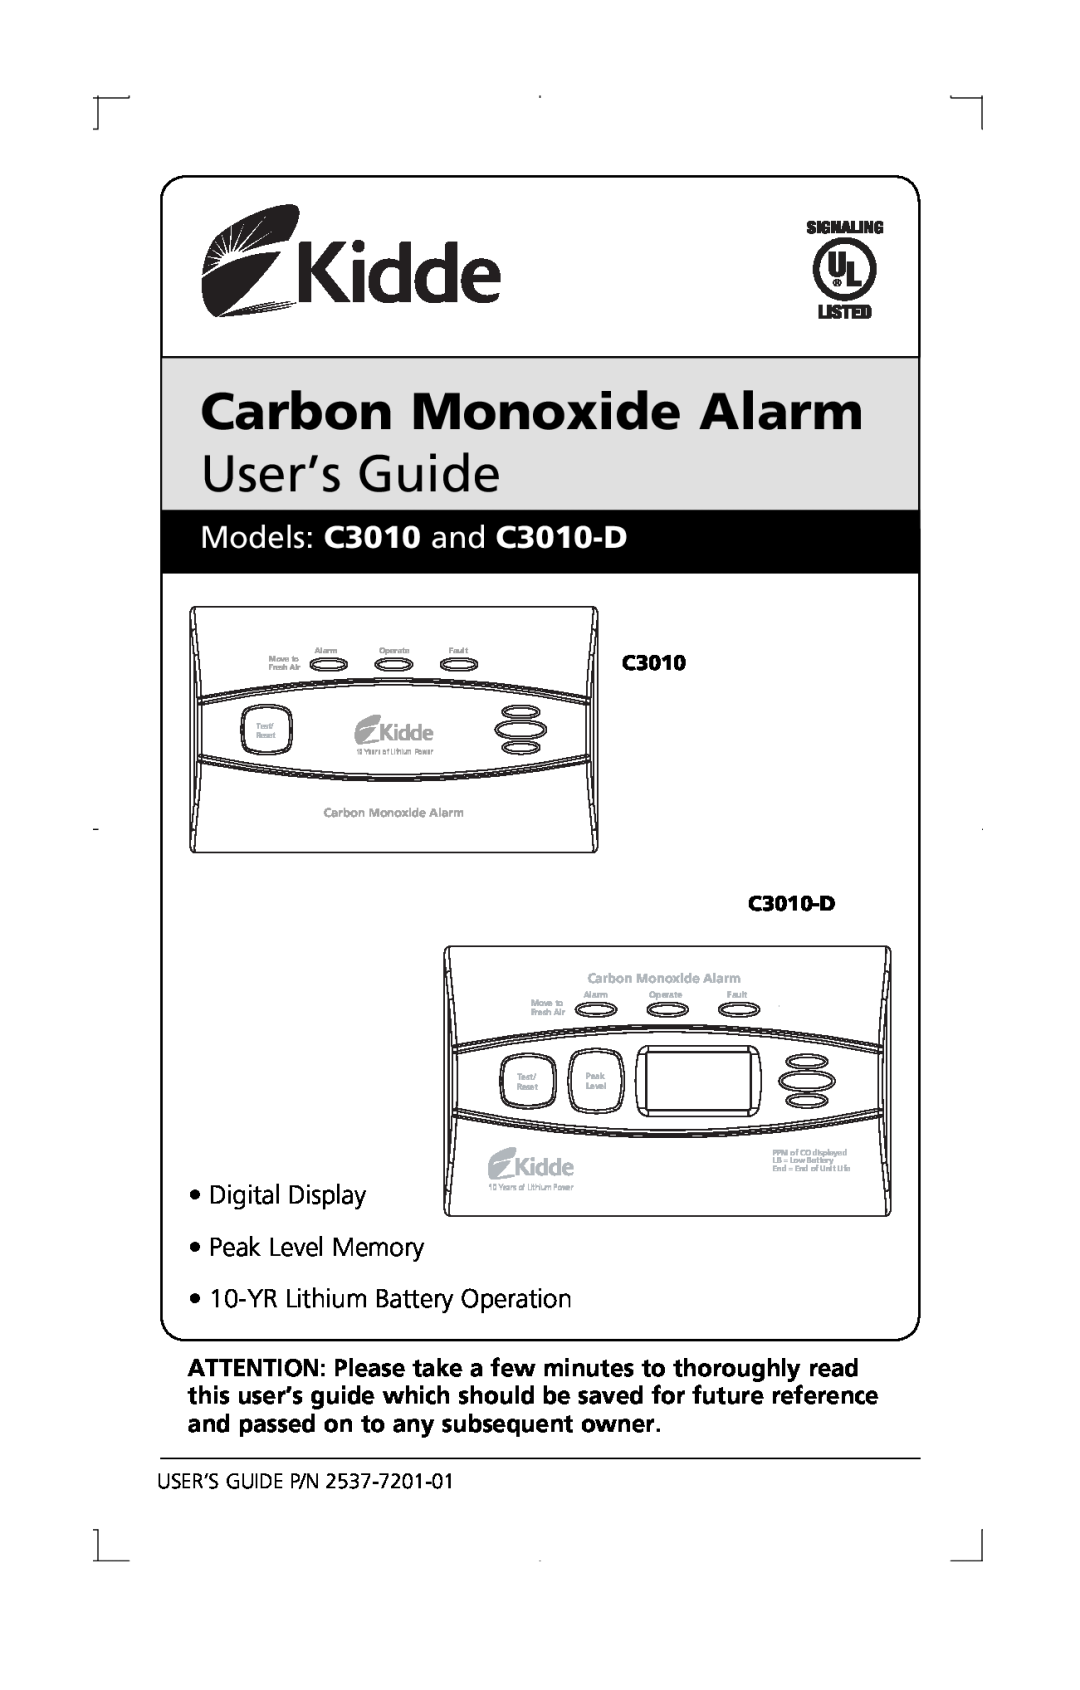 Kidde manual Models C3010 and C3010-D, Carbon Monoxide Alarm, User’s Guide, Digital Display, Peak Level Memory, Move to 